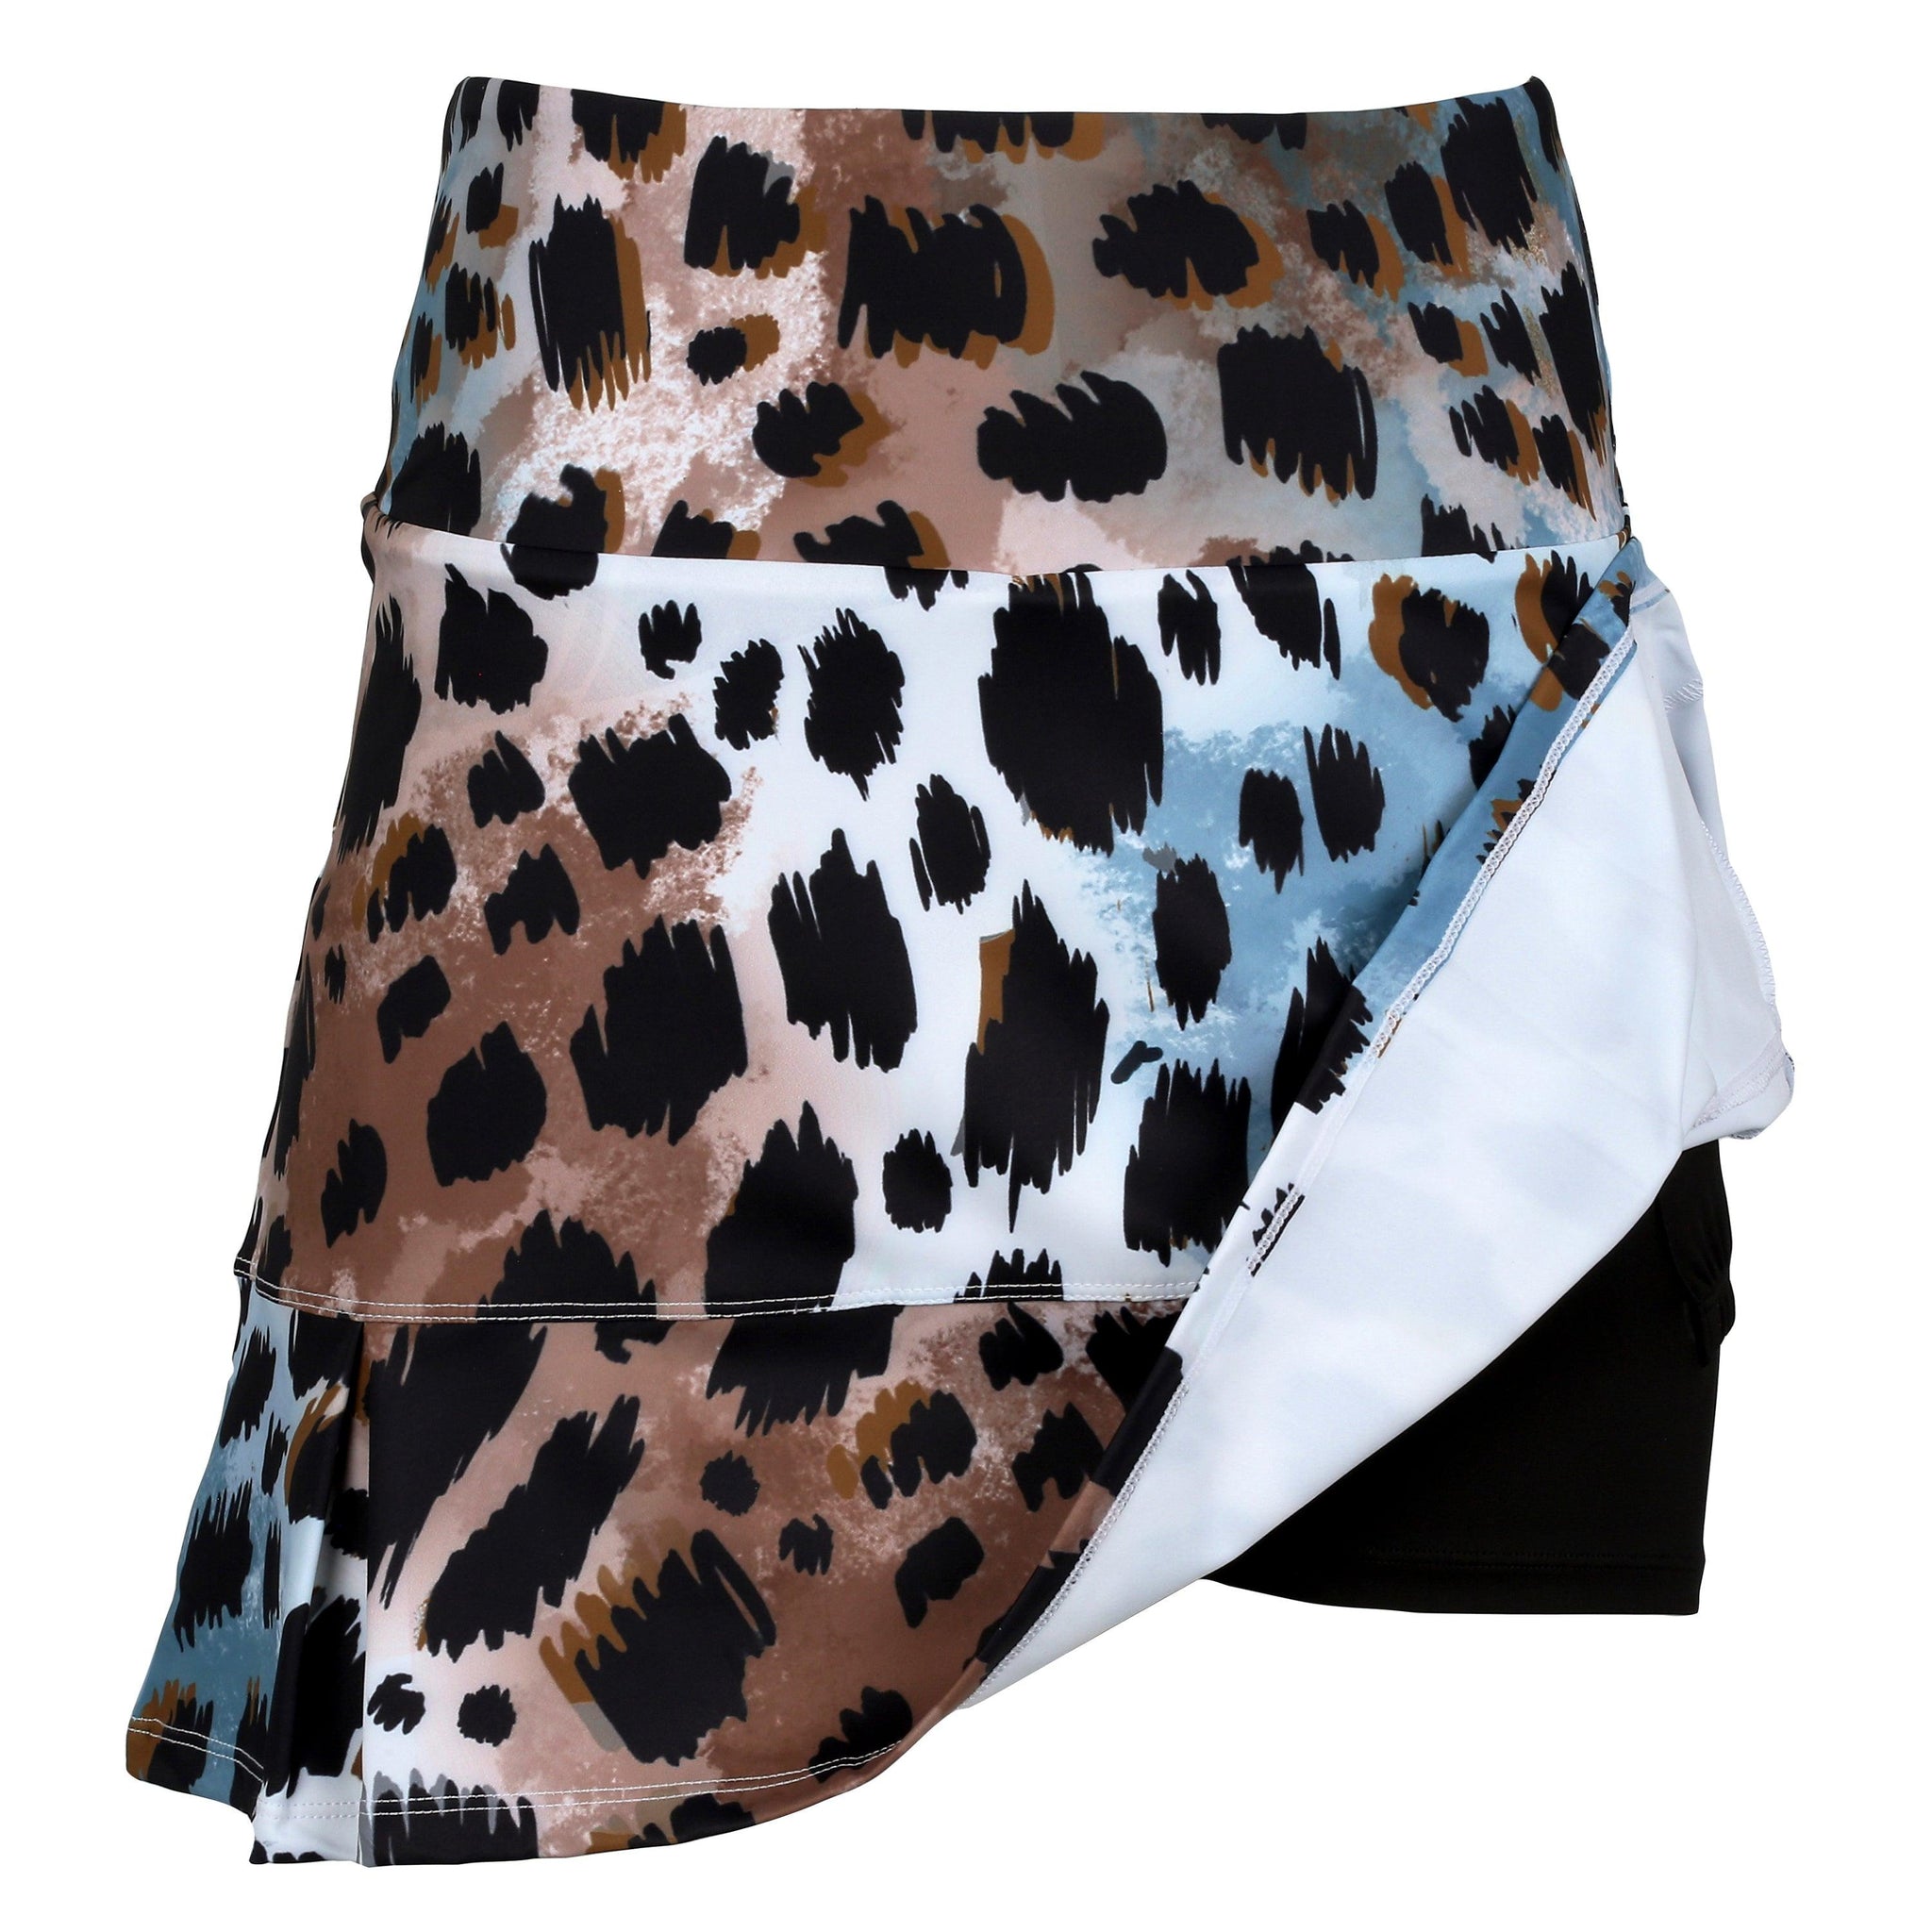 Snow Leopard Women's Golf Skirt and Tennis Skirt - Millie Rose Designs